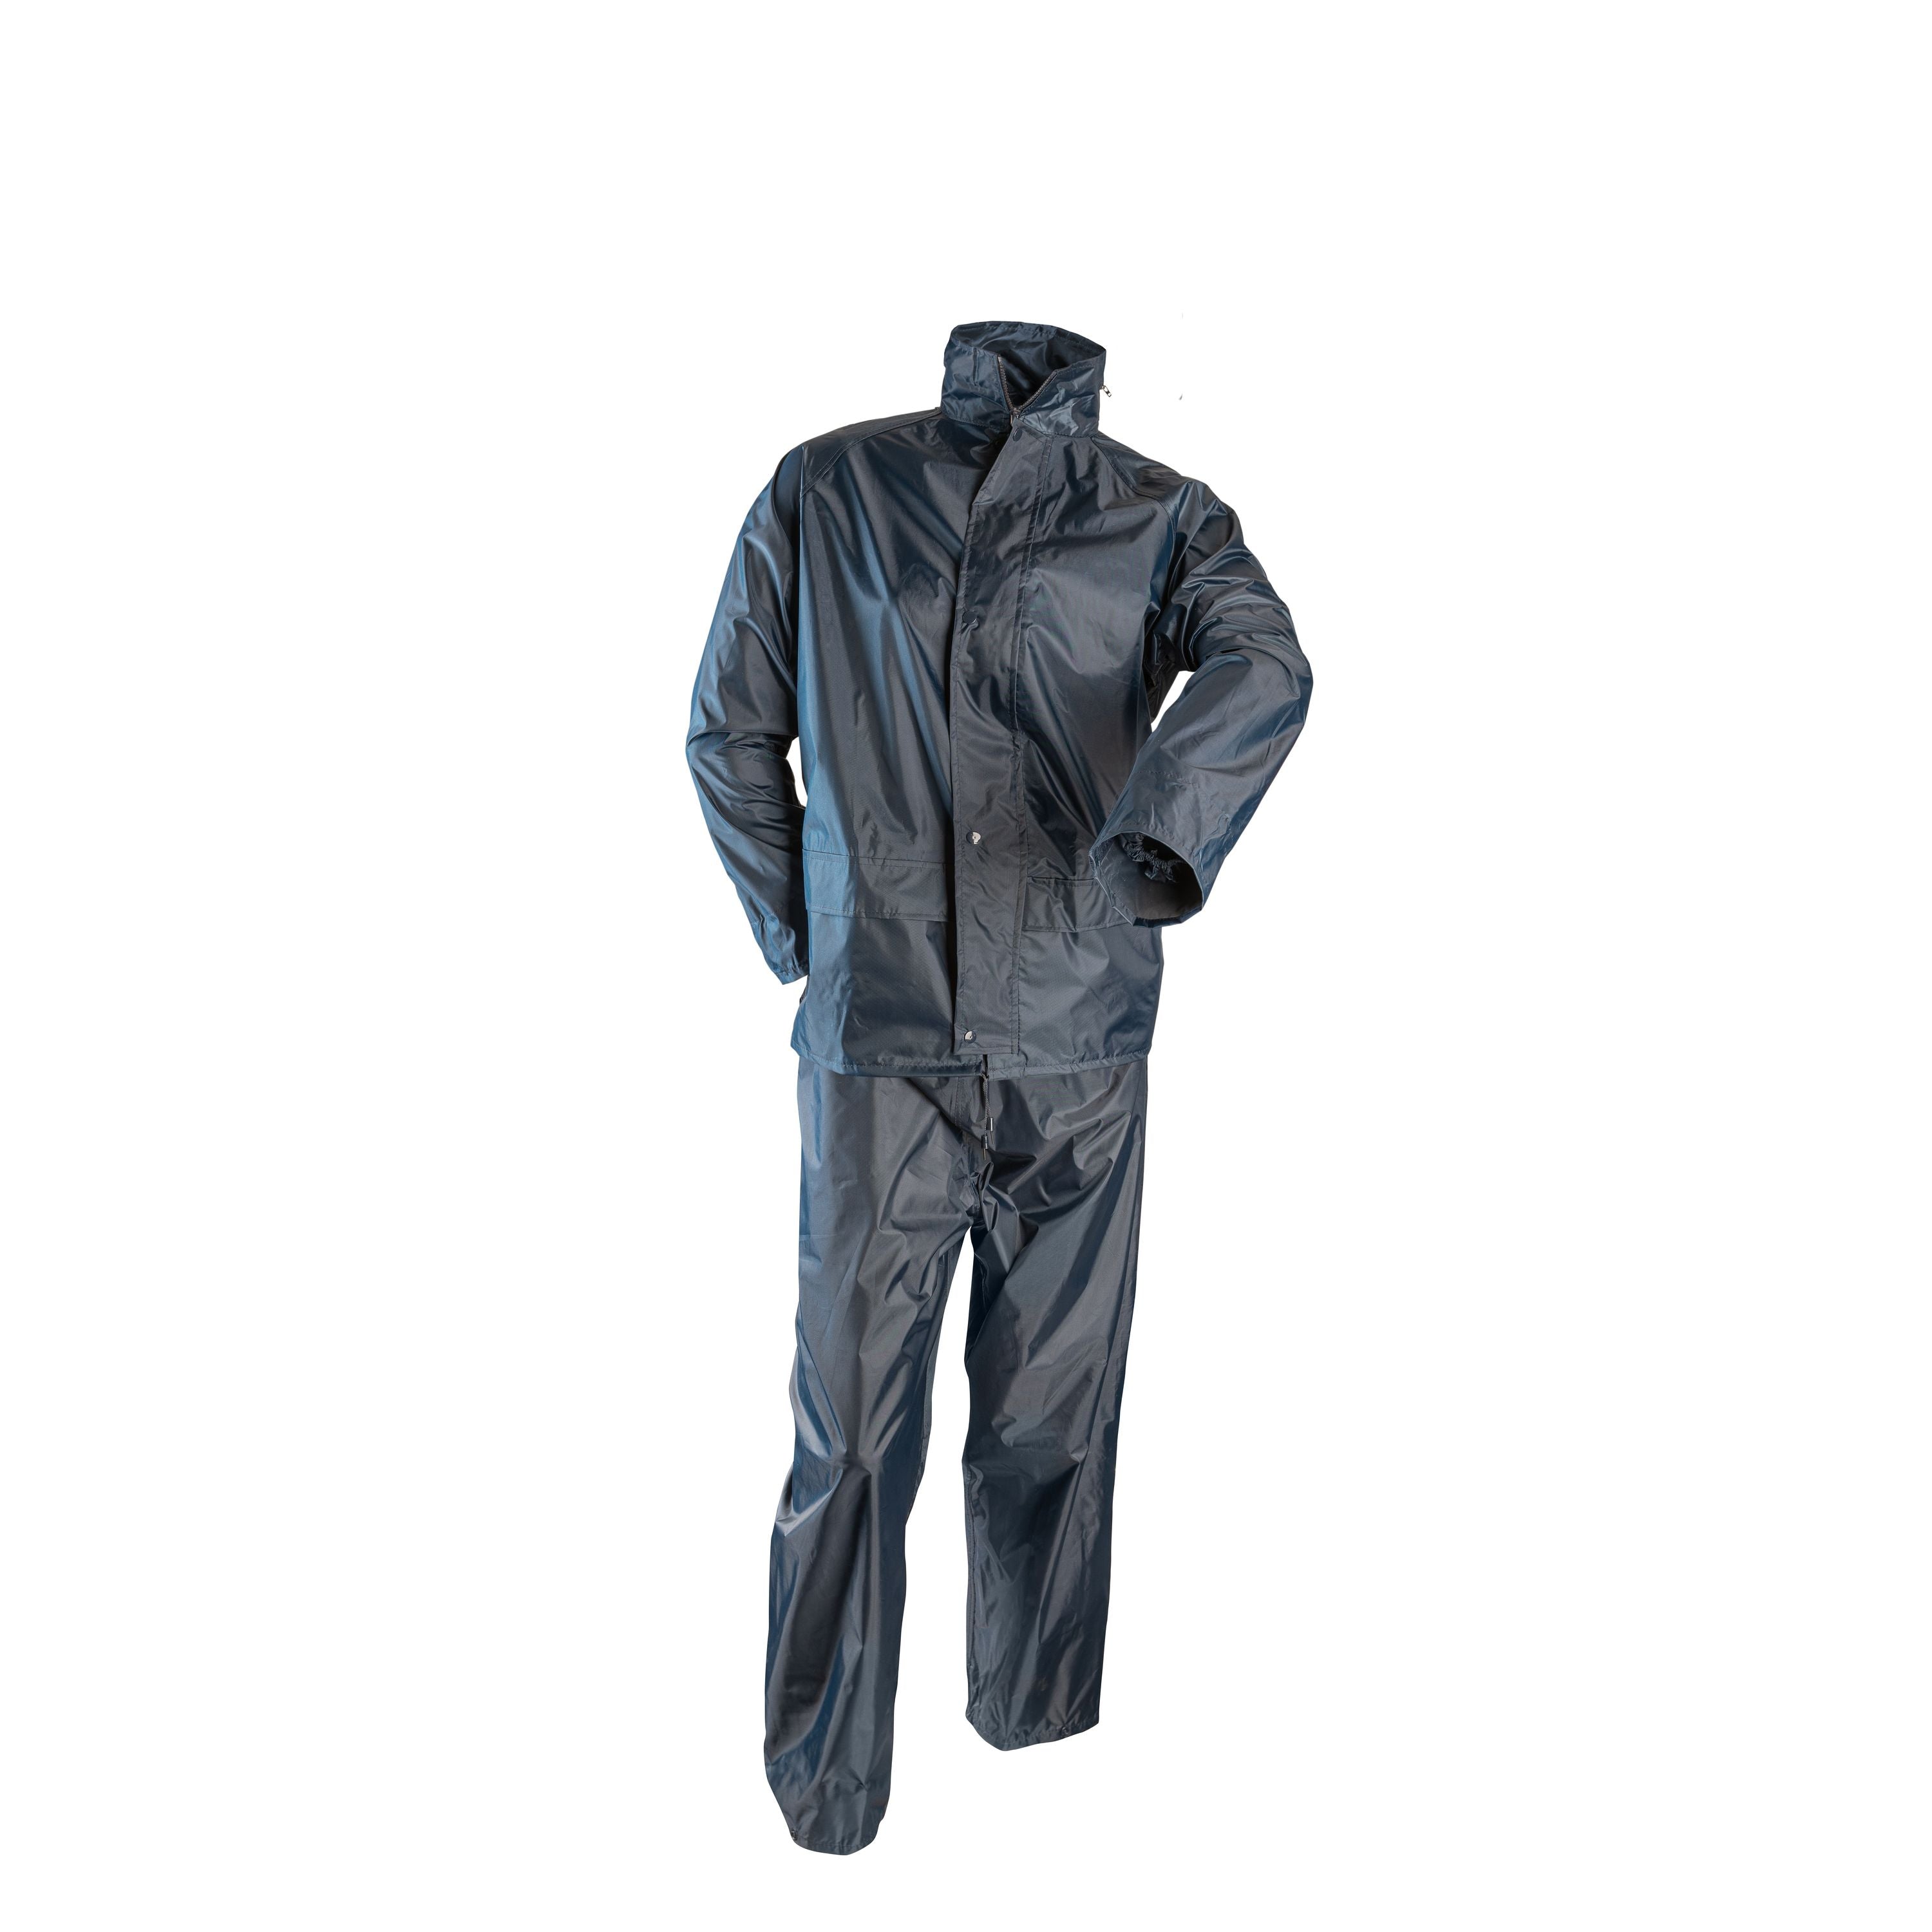 PVC rain suit - Men's